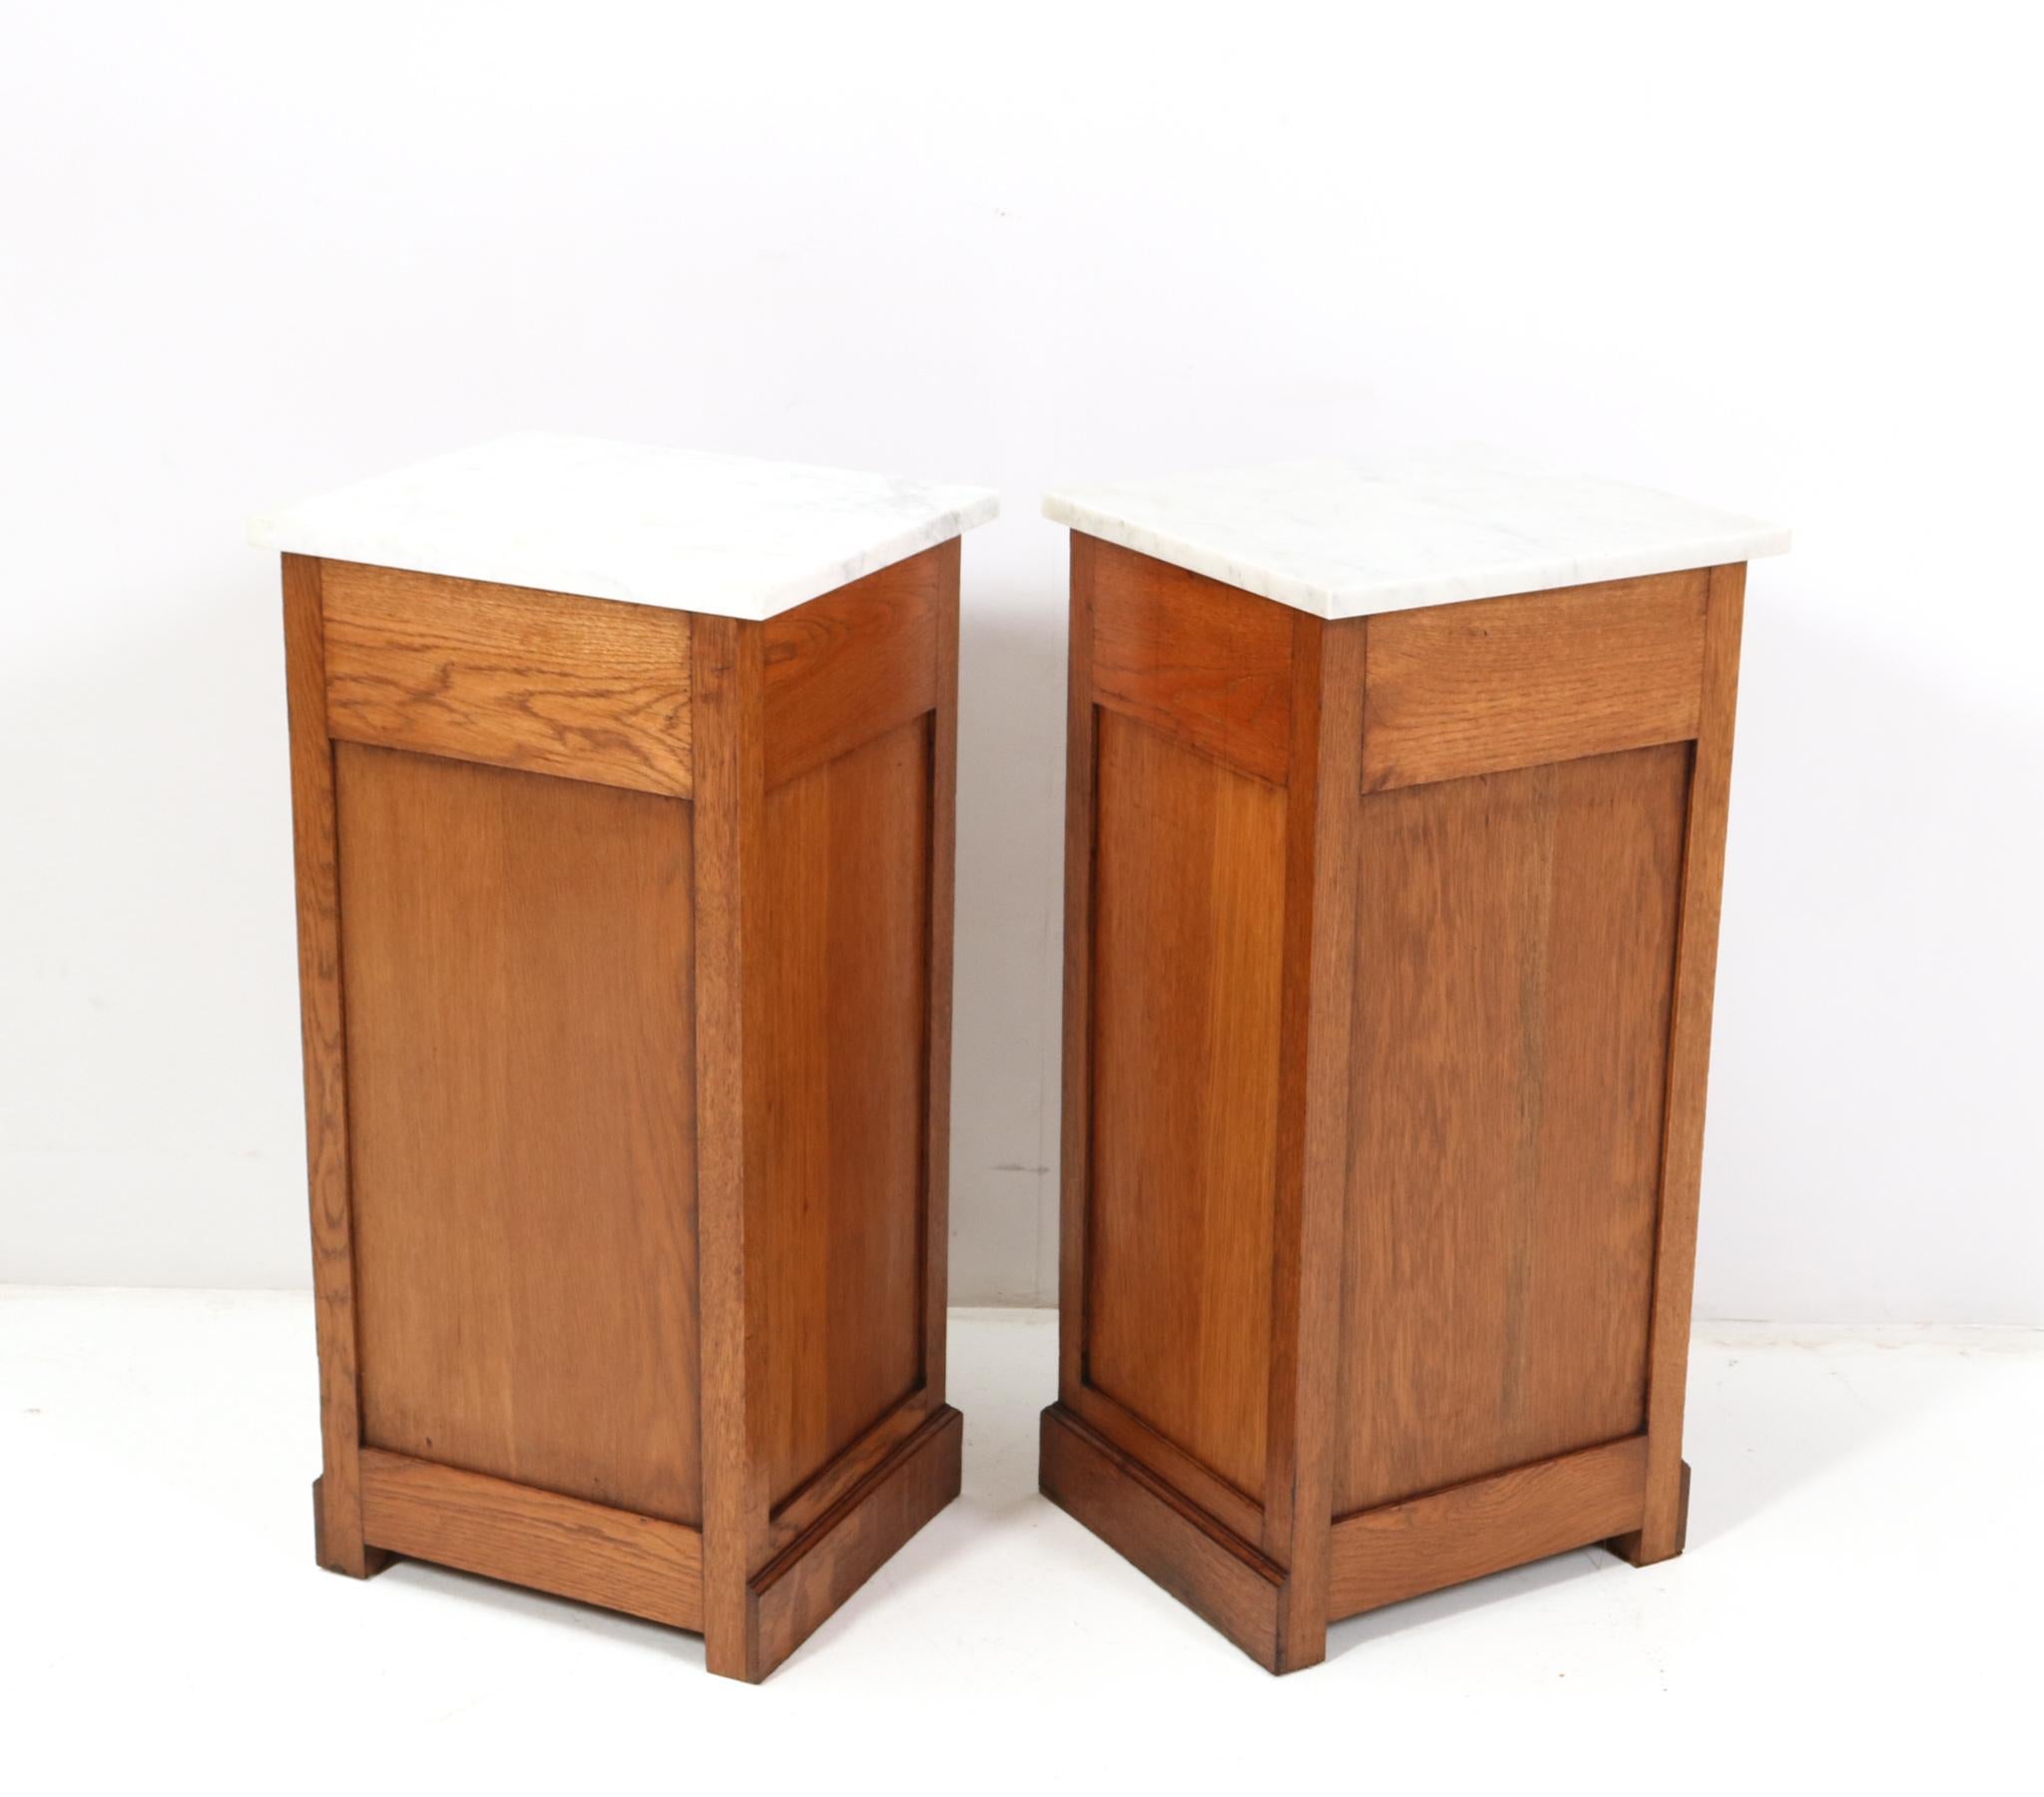 Two Oak Art Nouveau Jugendstil Nightstands or Bedside Tables, 1900s For Sale 5